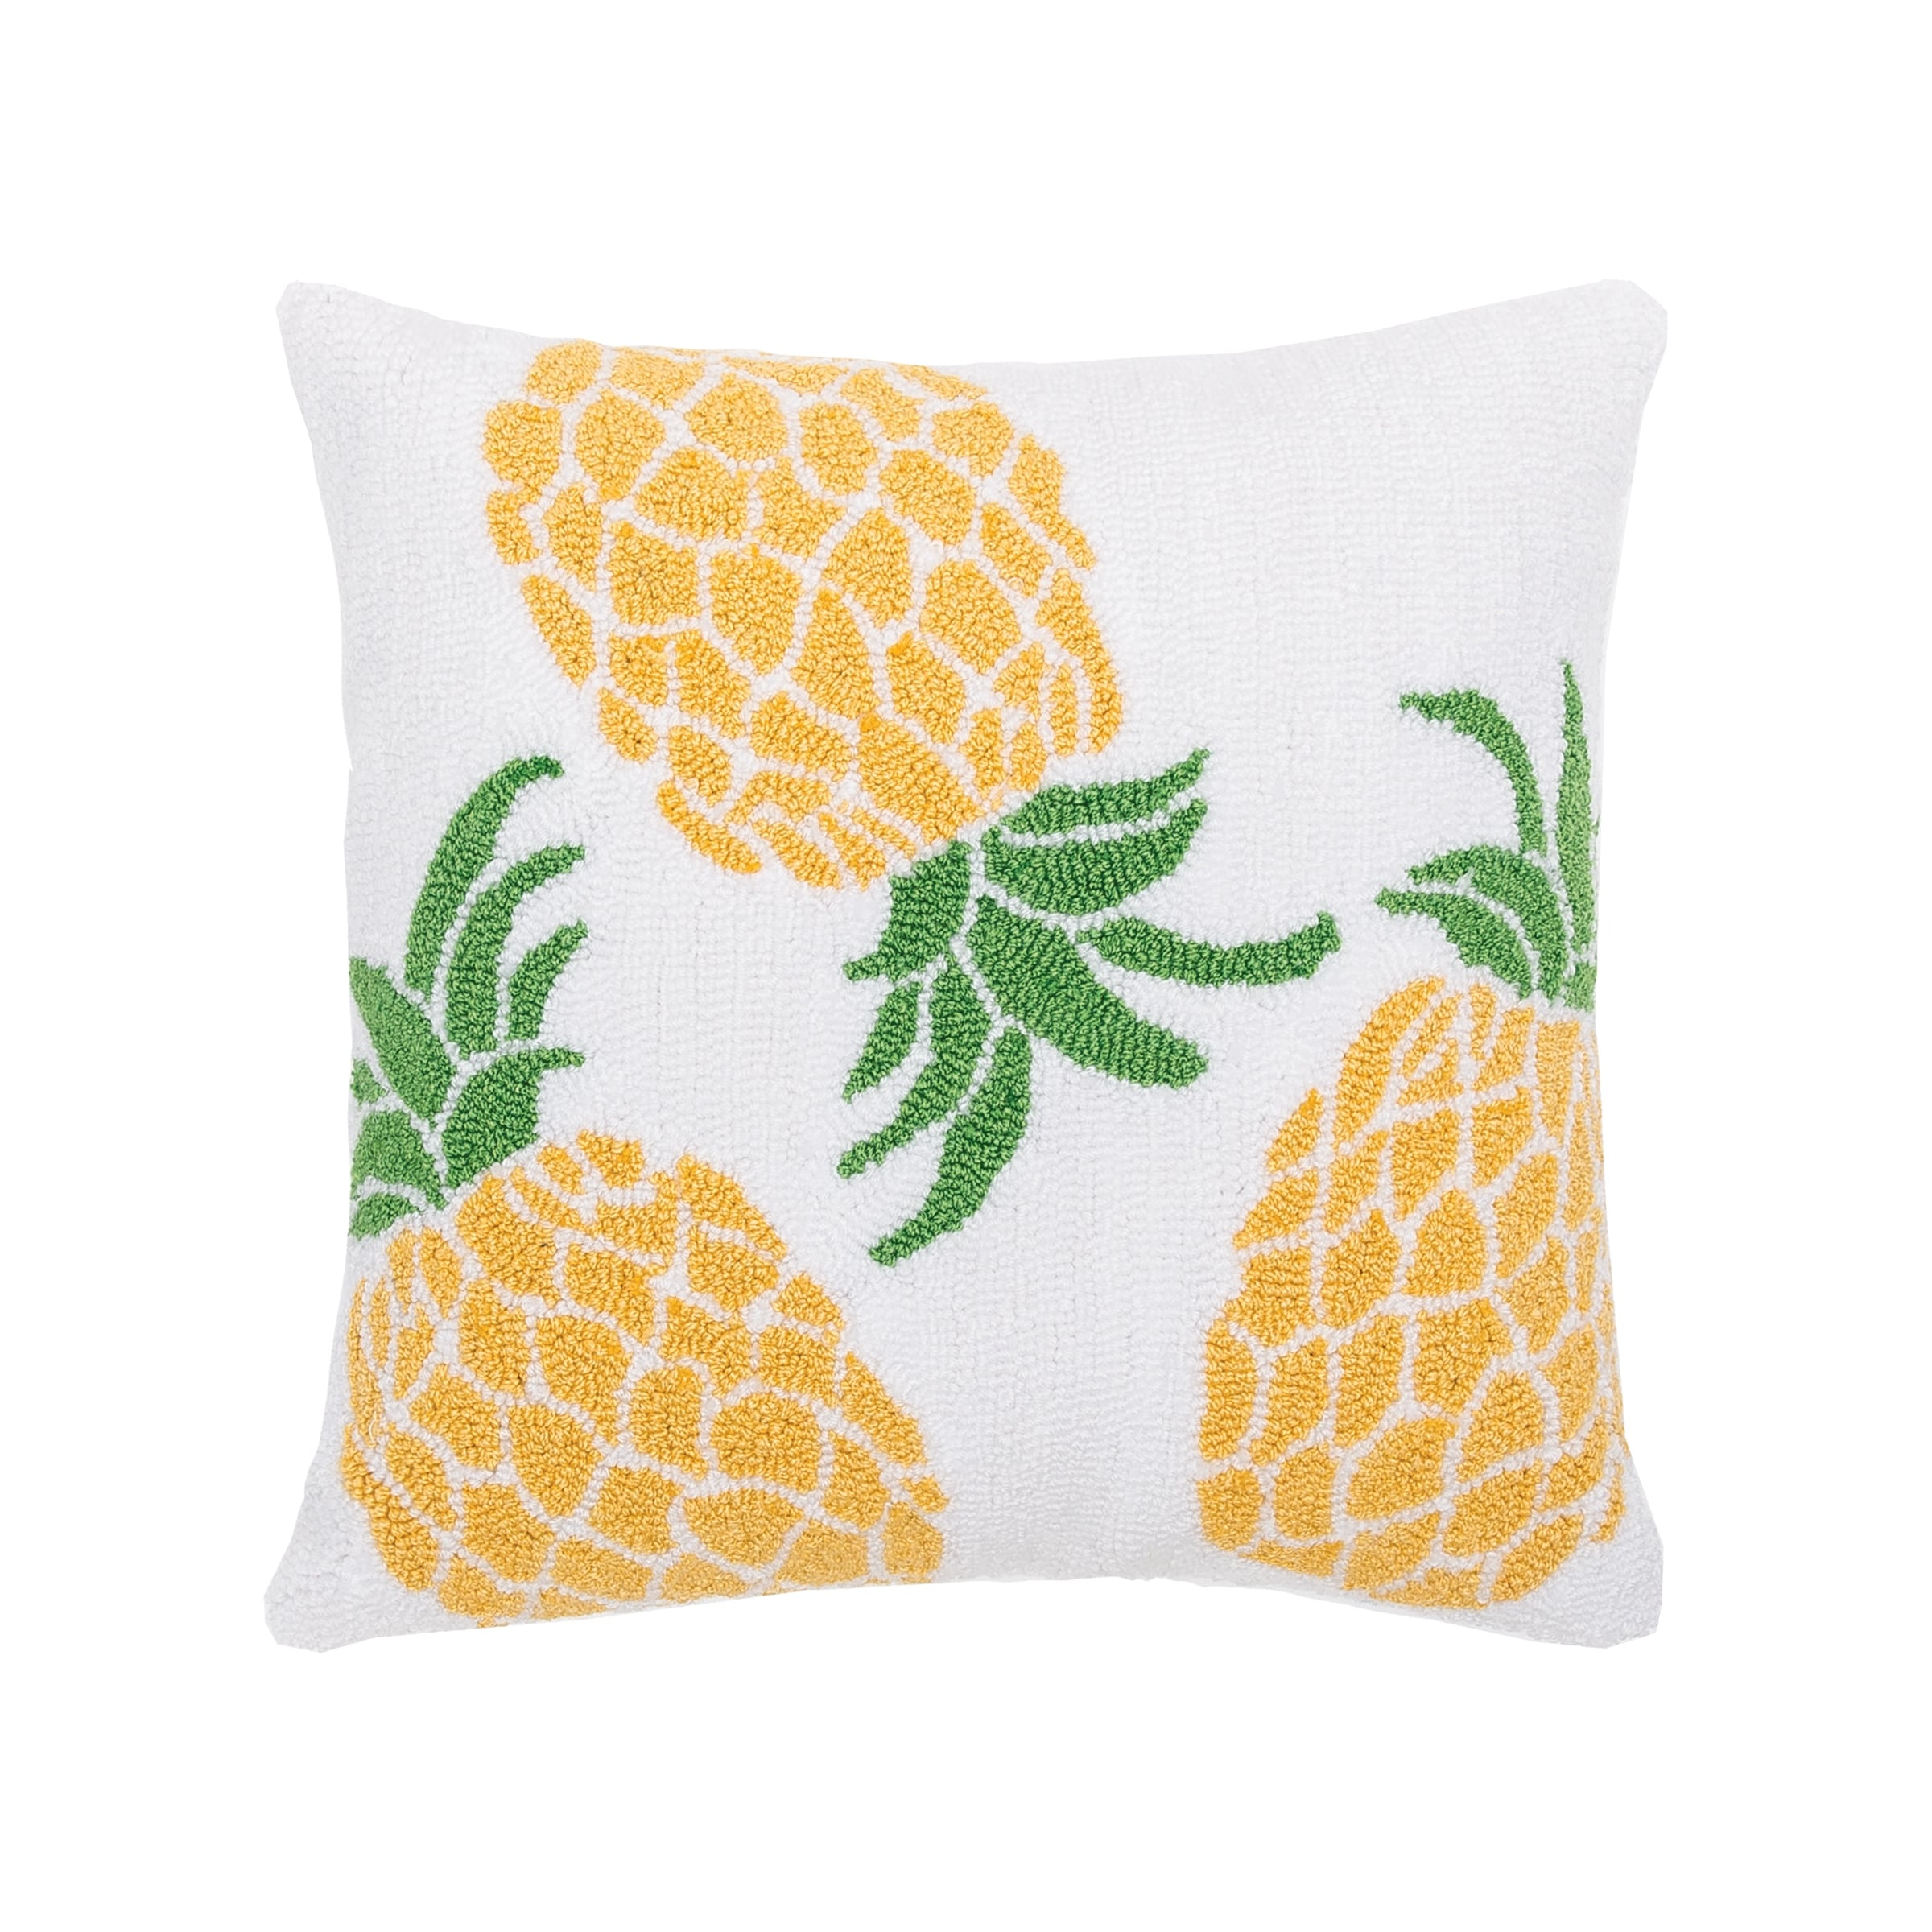 11057円 【メール便送料無料対応可】 Safavieh Pure Pineapple Throw Pillow Red Yellow